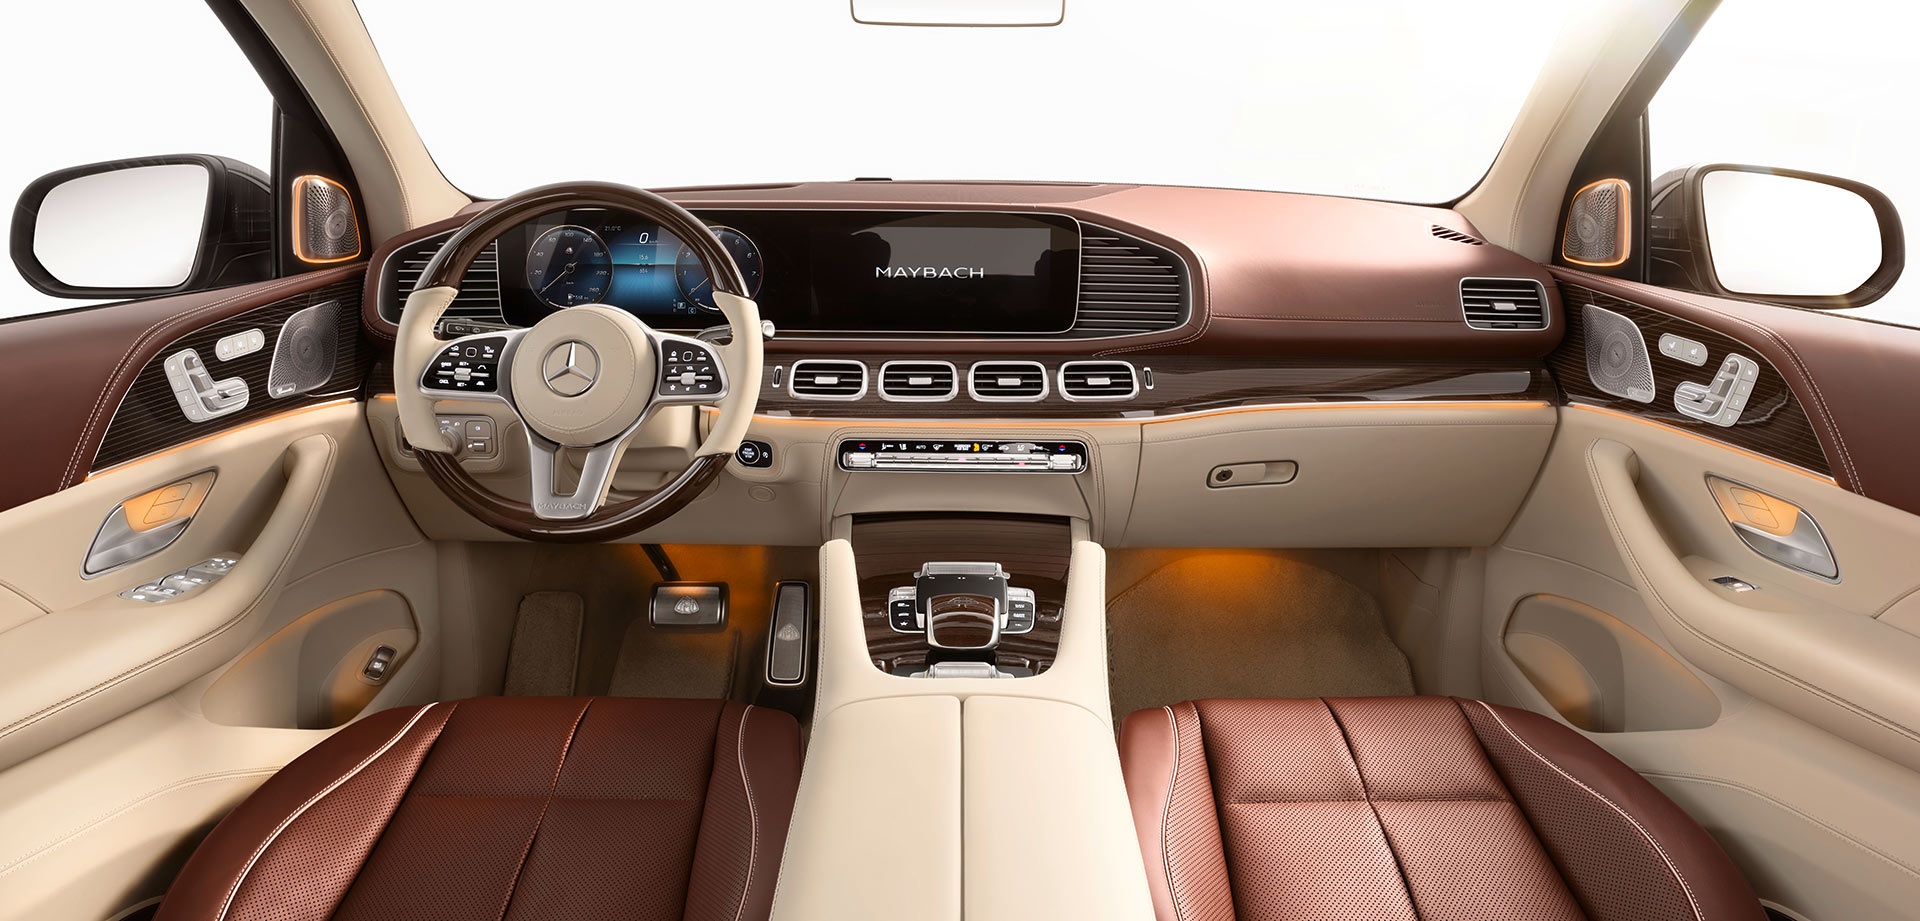 Mercedes-Maybach GLS 600 4MATIC chính hãng giá dự kiến từ 12,5 tỷ đồng gls600-maybach-04.jpg